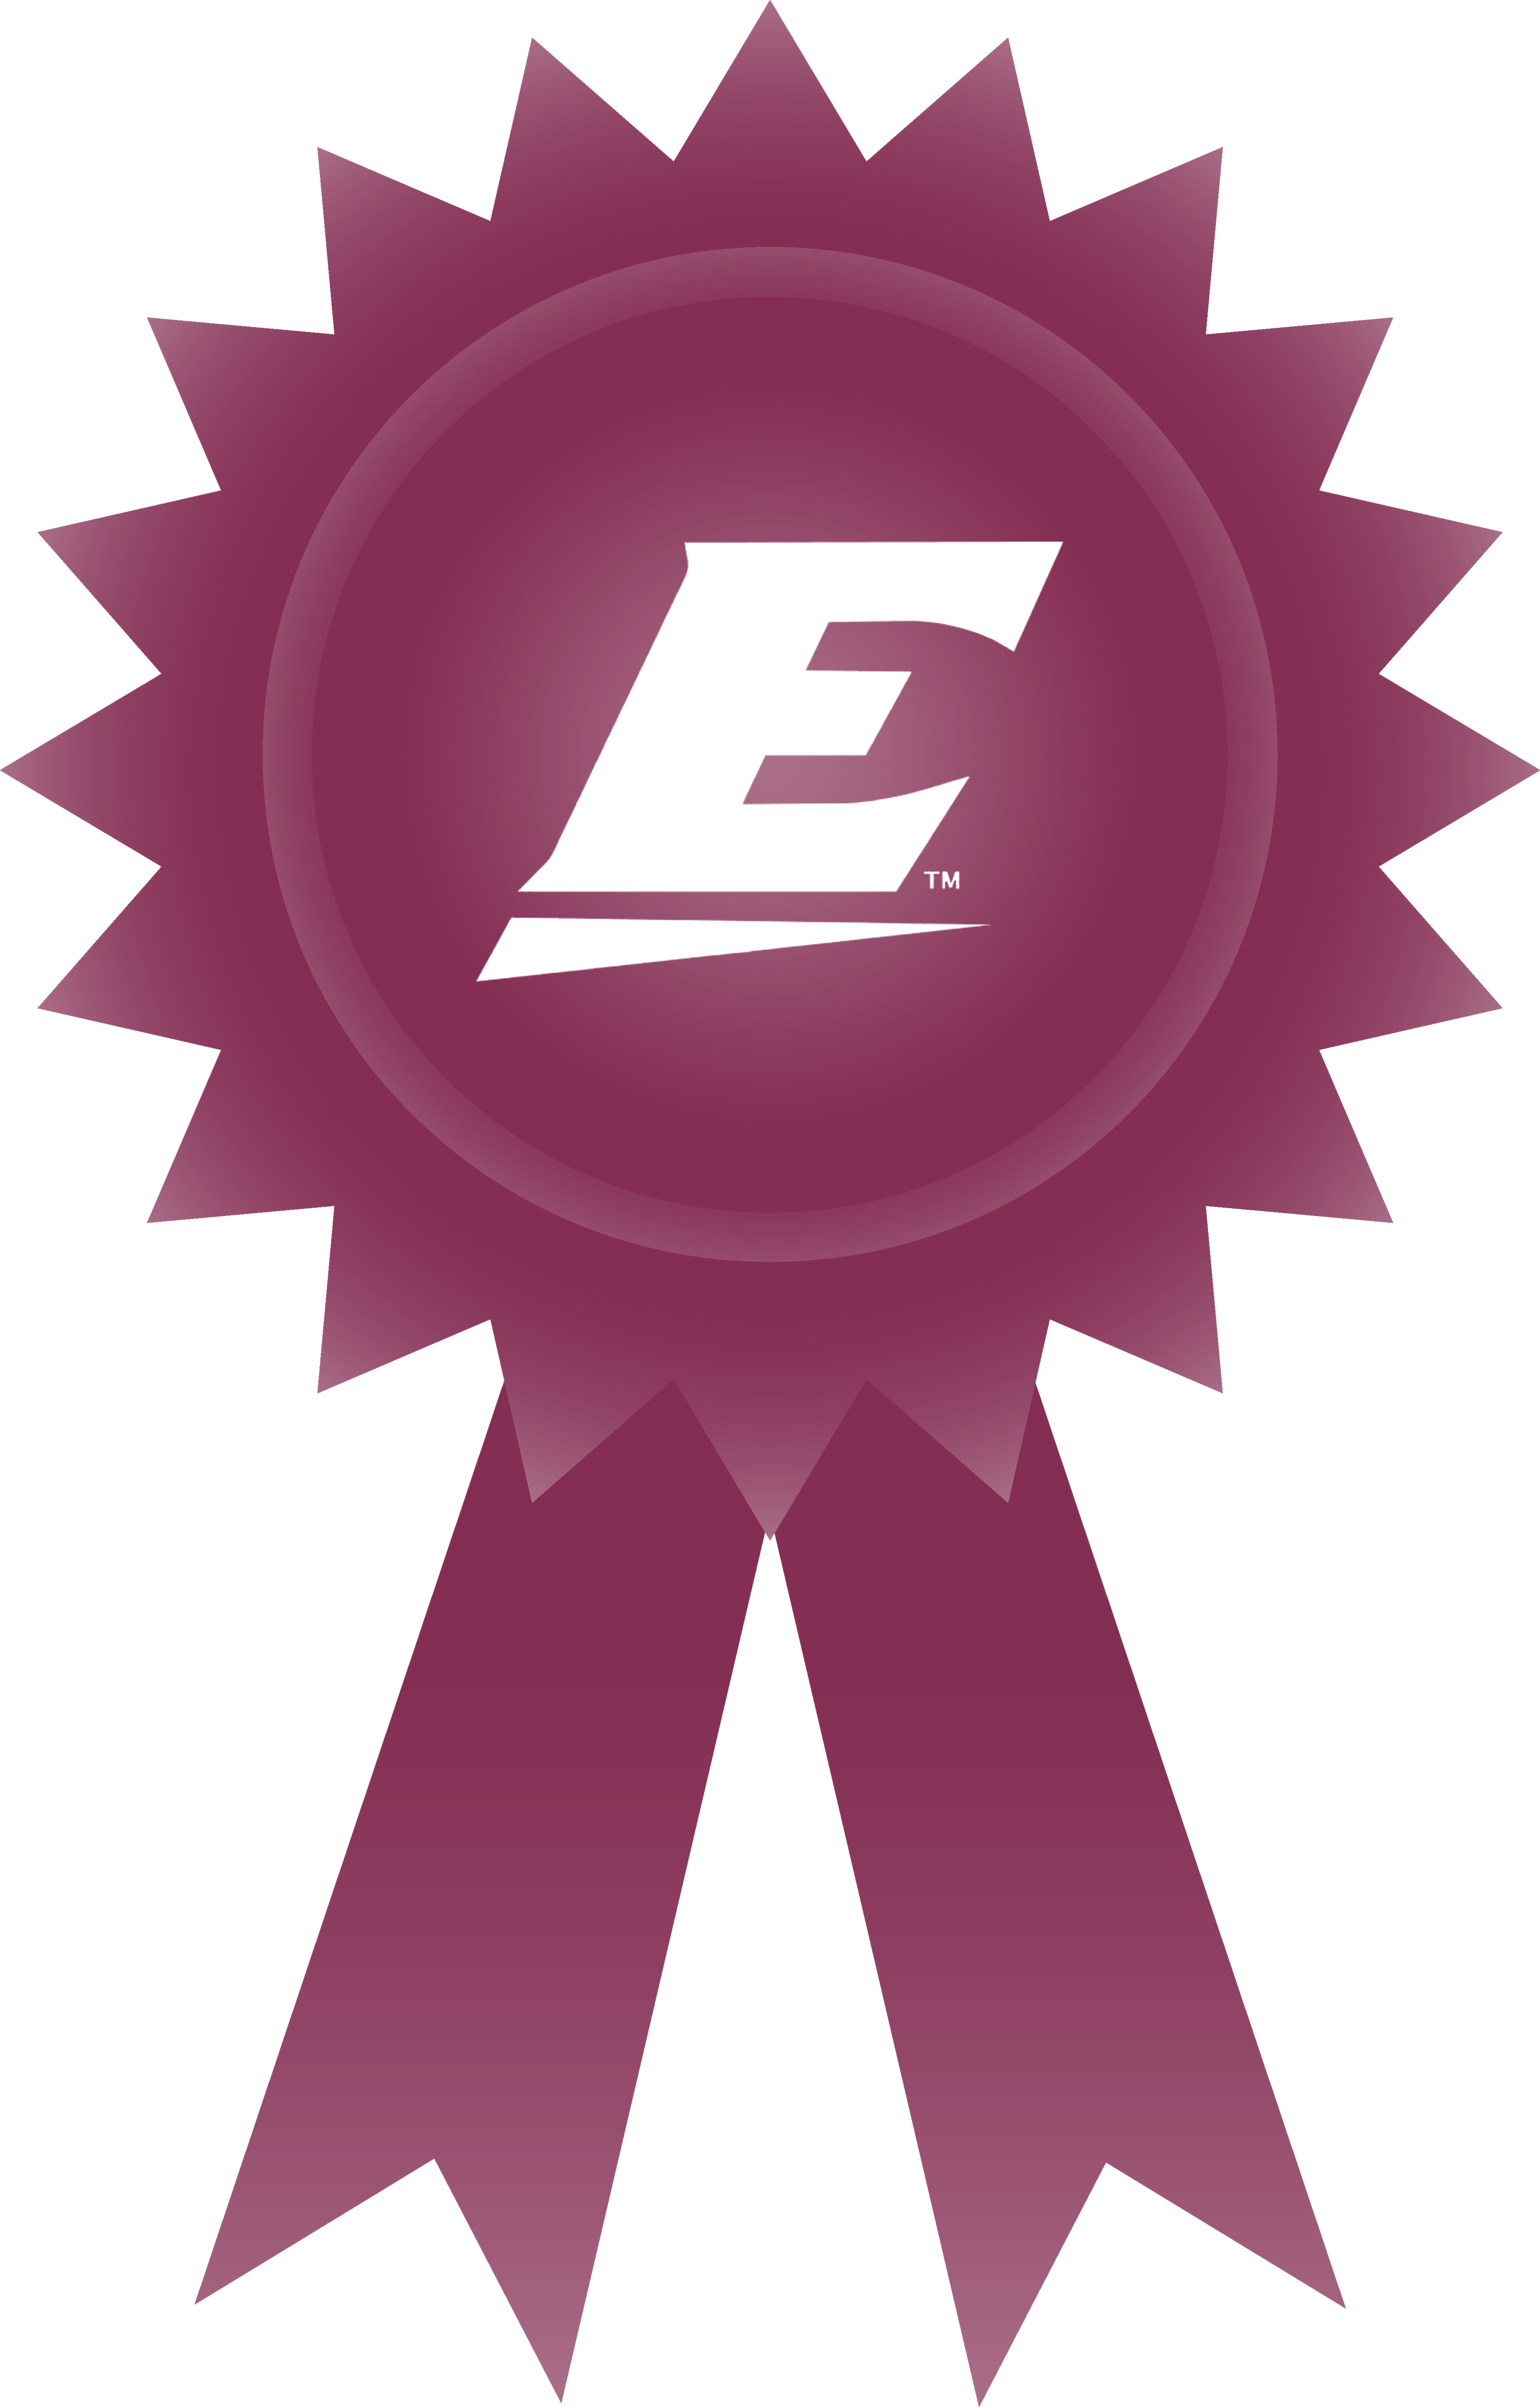 Eku Alumni Awards - Transparent Background Red Ribbon Award (3717x5809), Png Download